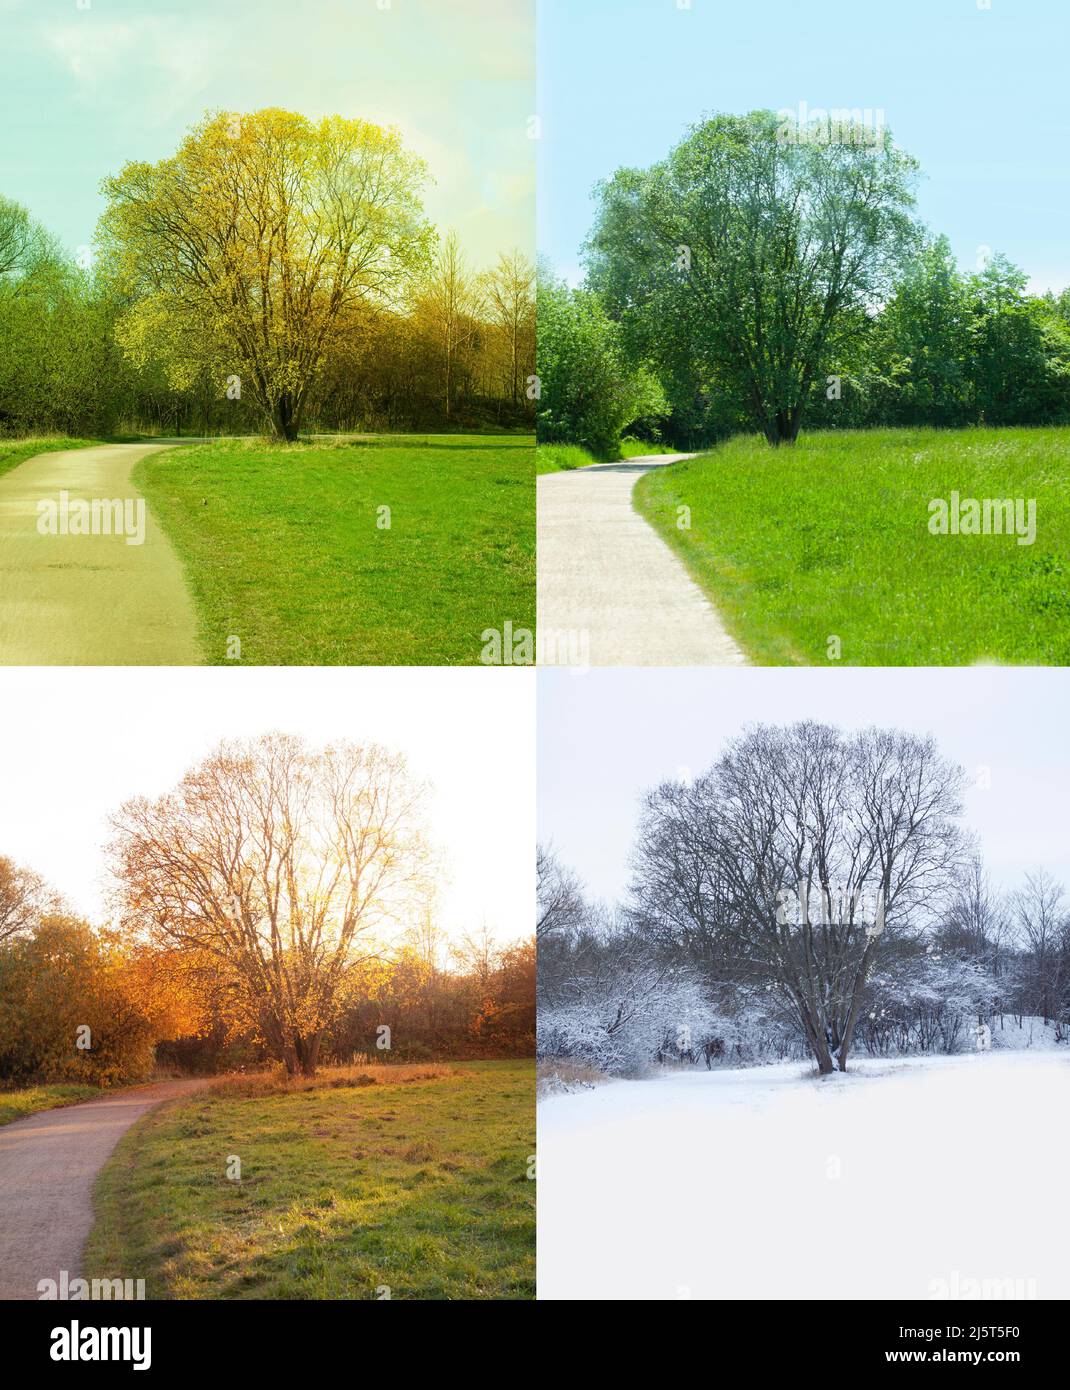 Arbre dans la nature montrant les quatre saisons - printemps, été, automne et hiver en images de colimbinés. Banque D'Images